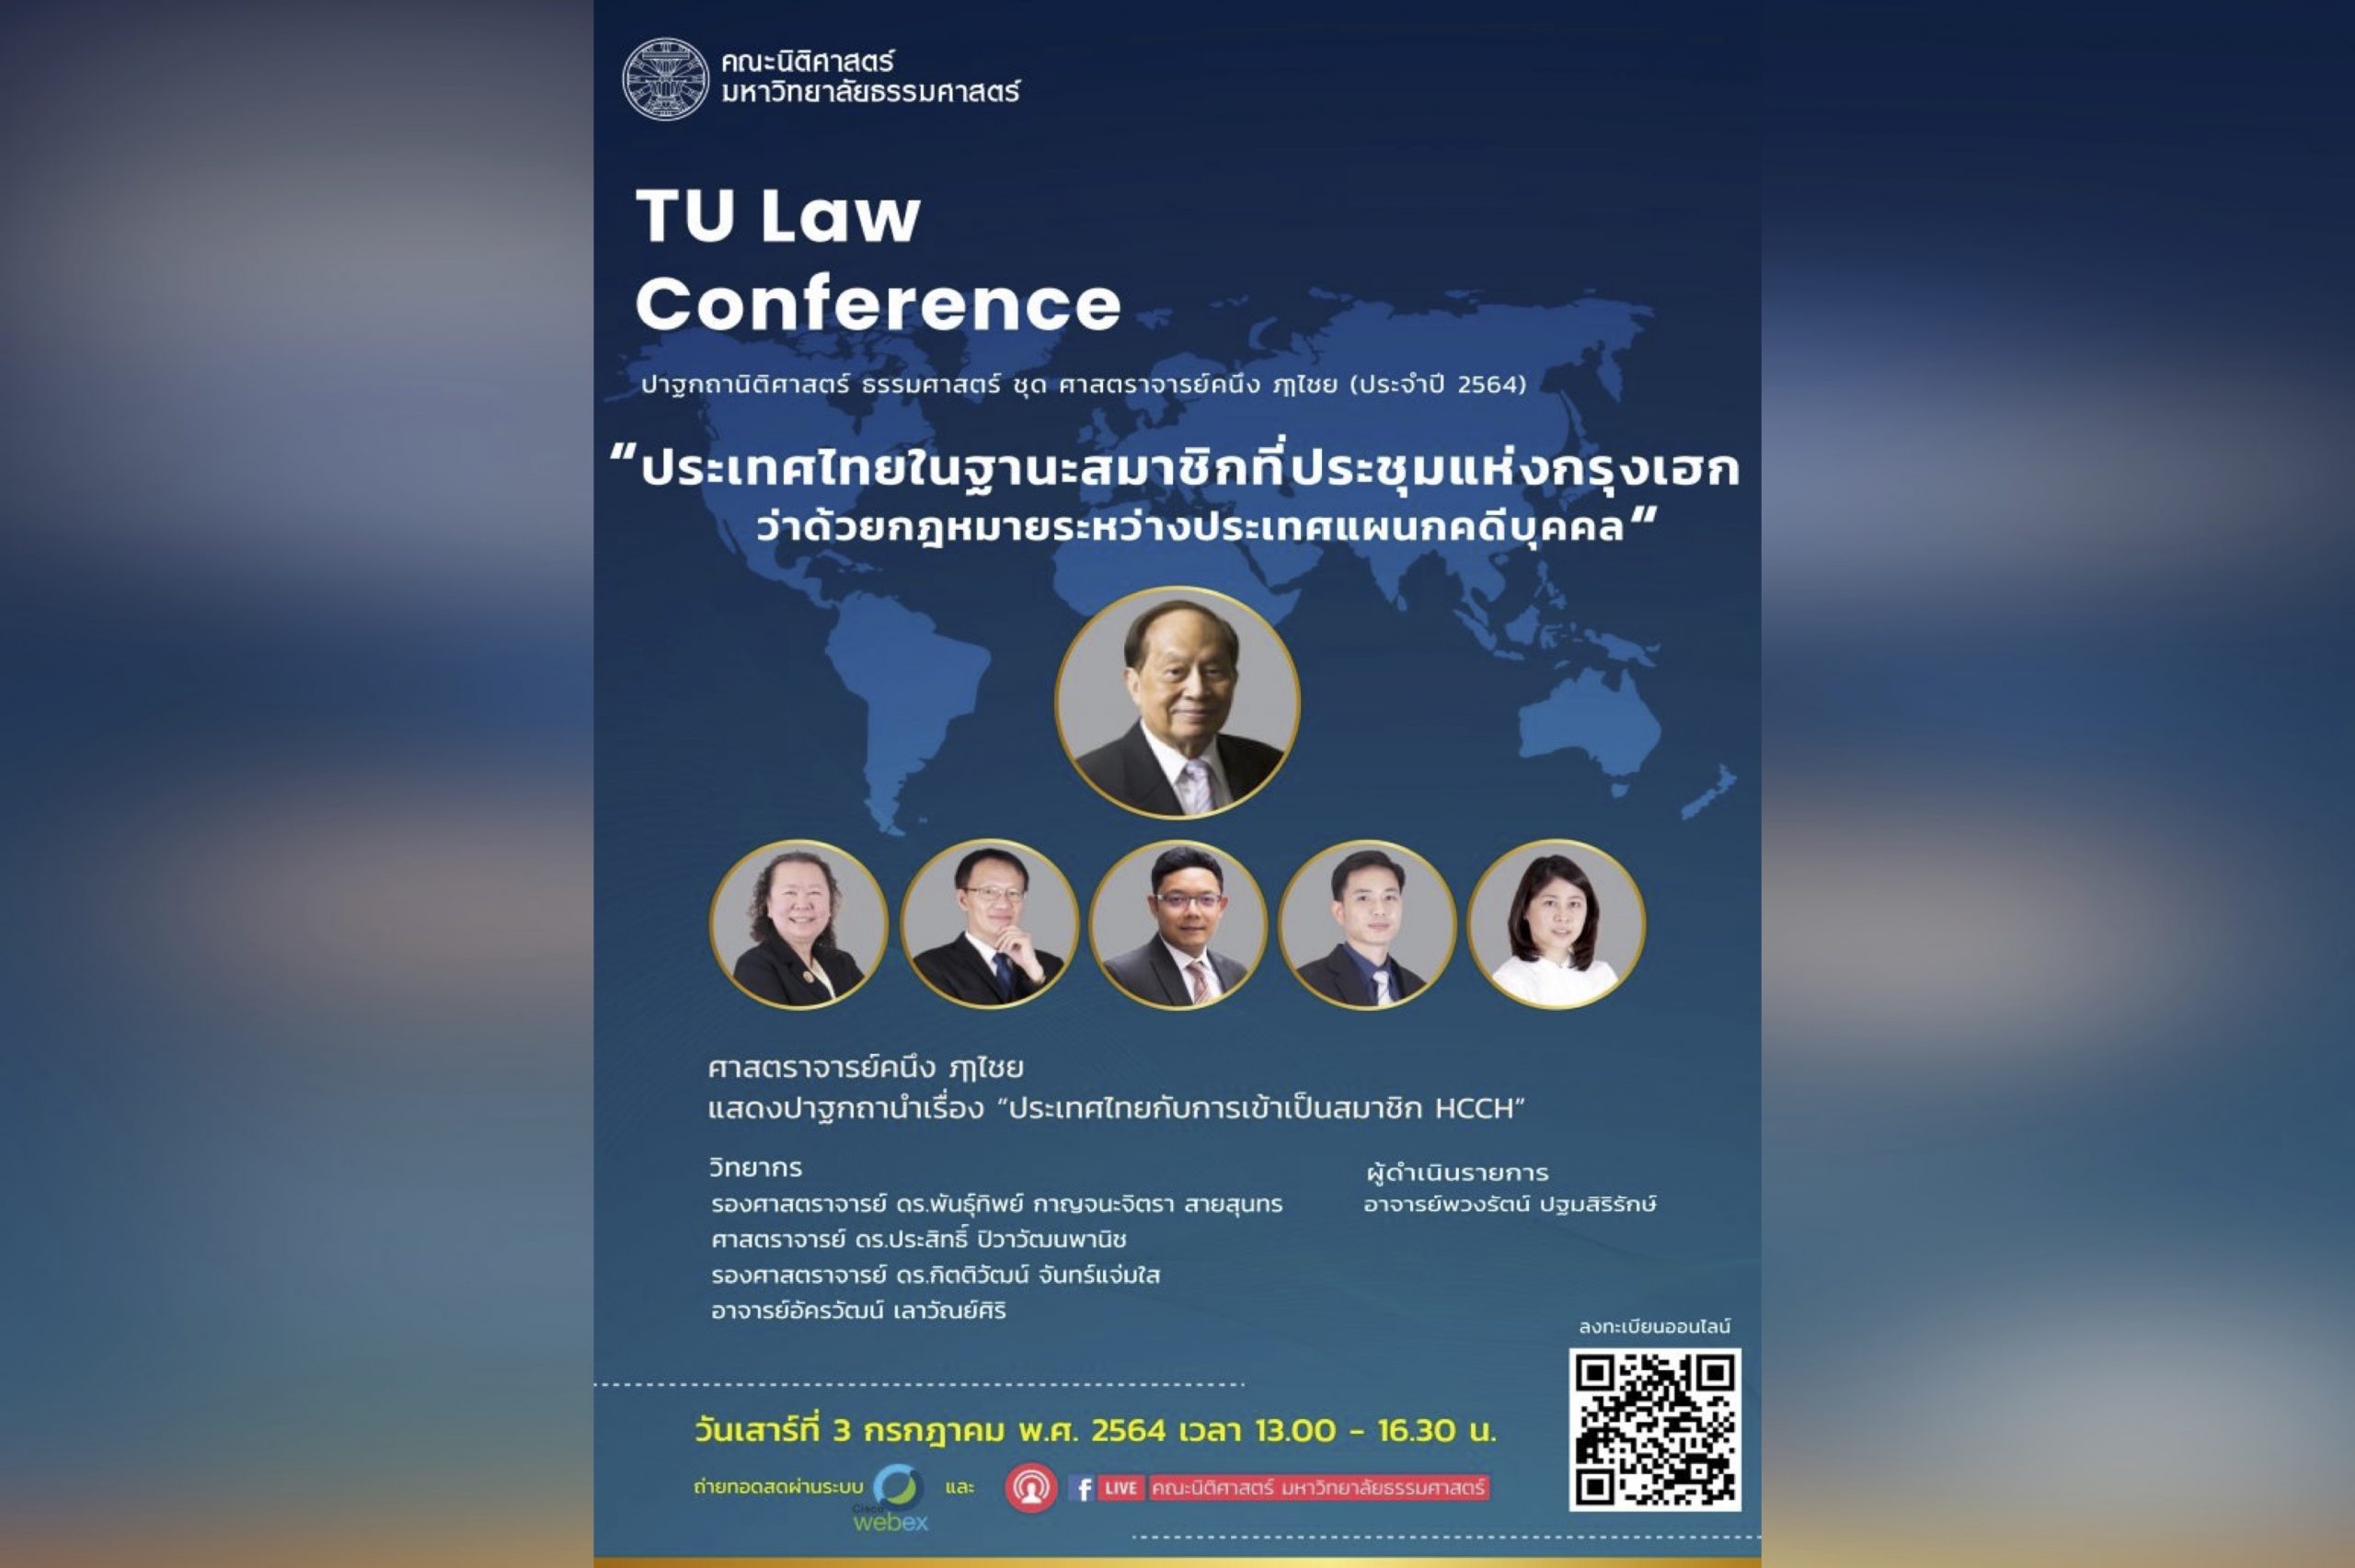 งานวิชาการรำลึก TU Law Conference ปาฐกถานิติศาสตร์ ธรรมศาสตร์ชุด ศาสตราจารย์คนึง ฦๅไชย (ประจำปี 2564)